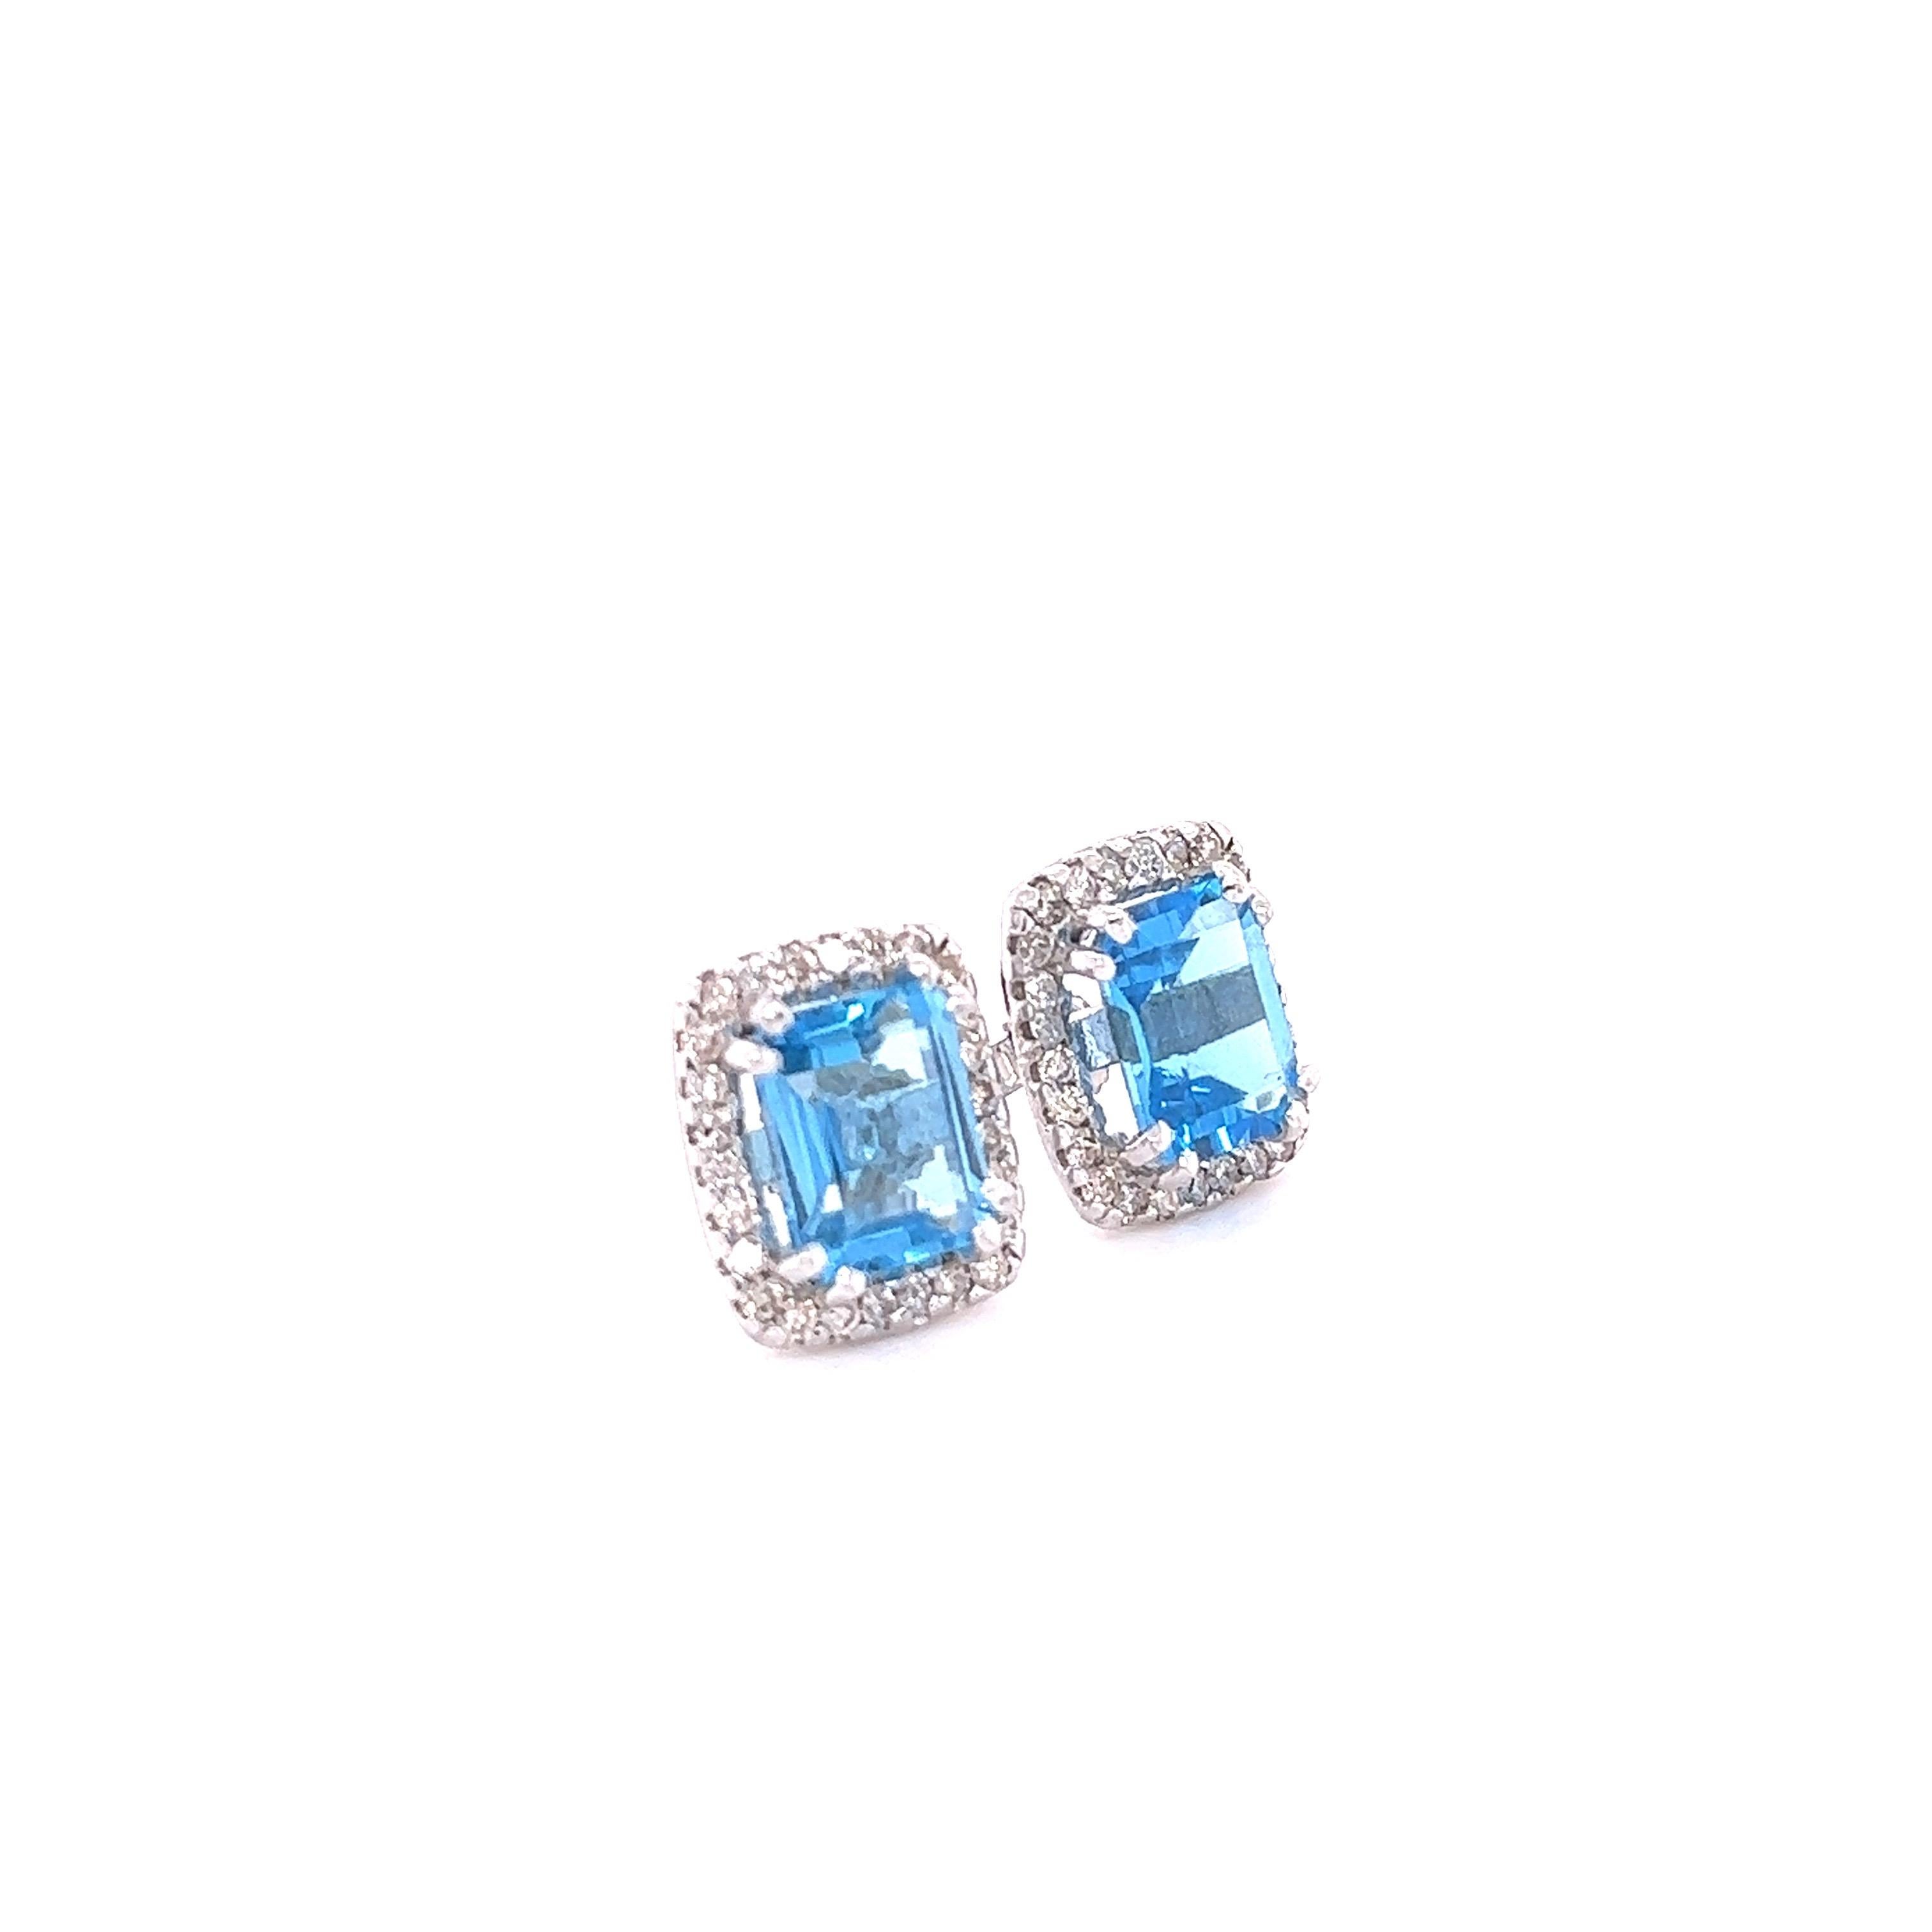 Diese Ohrringe haben natürliche blaue Topase im Smaragdschliff, die 5,71 Karat wiegen, und natürliche Diamanten im Rundschliff, die 0,71 Karat wiegen. Das Gesamtkaratgewicht der Ohrringe beträgt 6.42 Karat. 

Die Ohrringe haben eine Größe von ca. 13